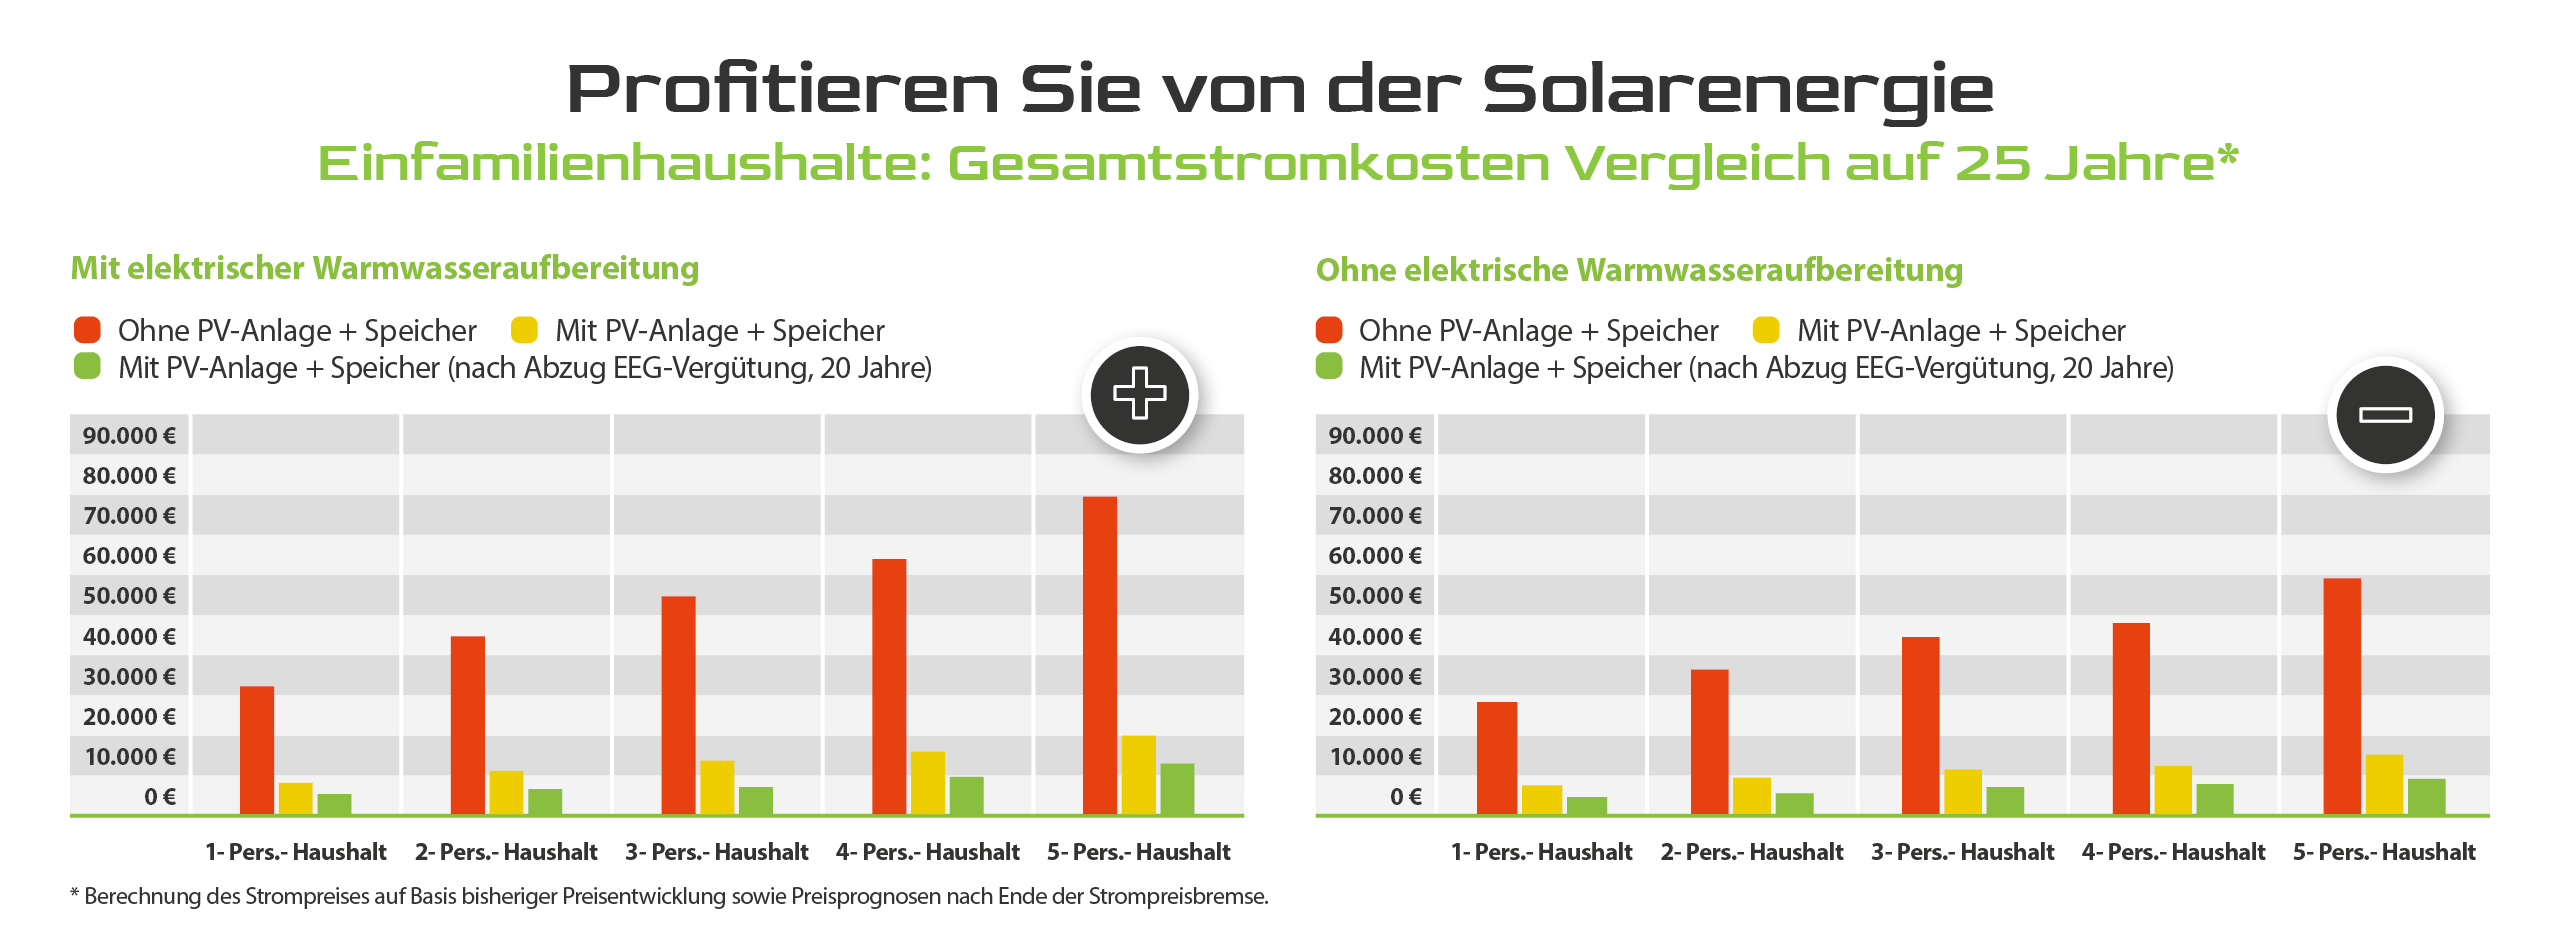 Säulendiagramm zur Frage ob sich eine Photovoltaikanlage lohnt